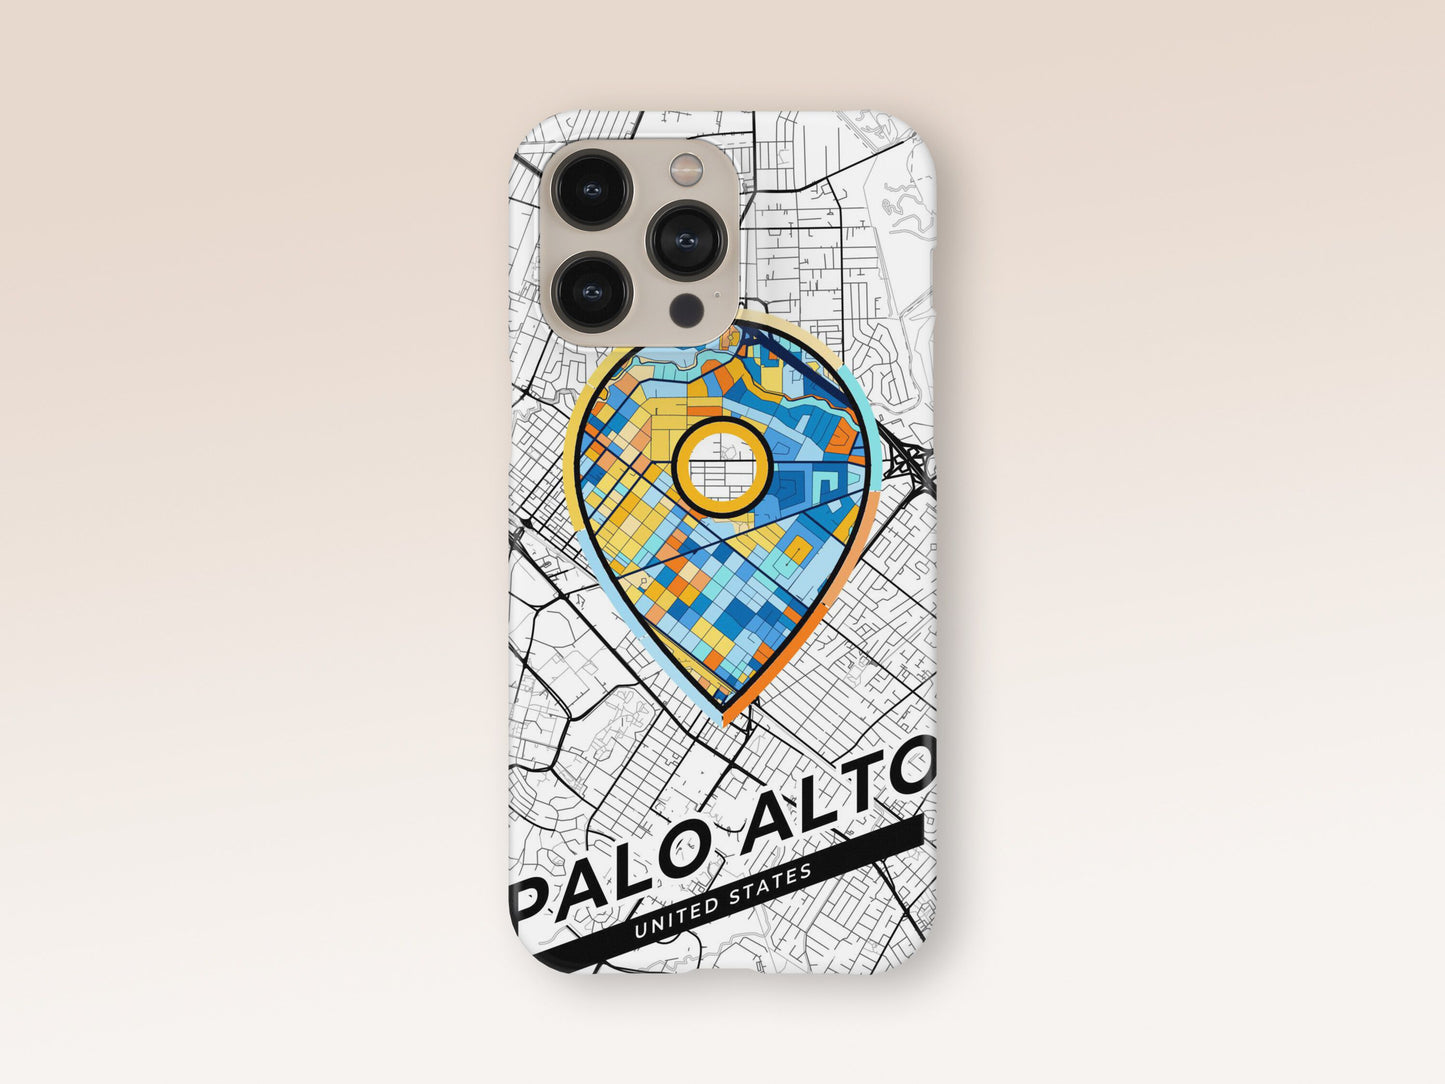 Palo Alto California slim phone case with colorful icon 1